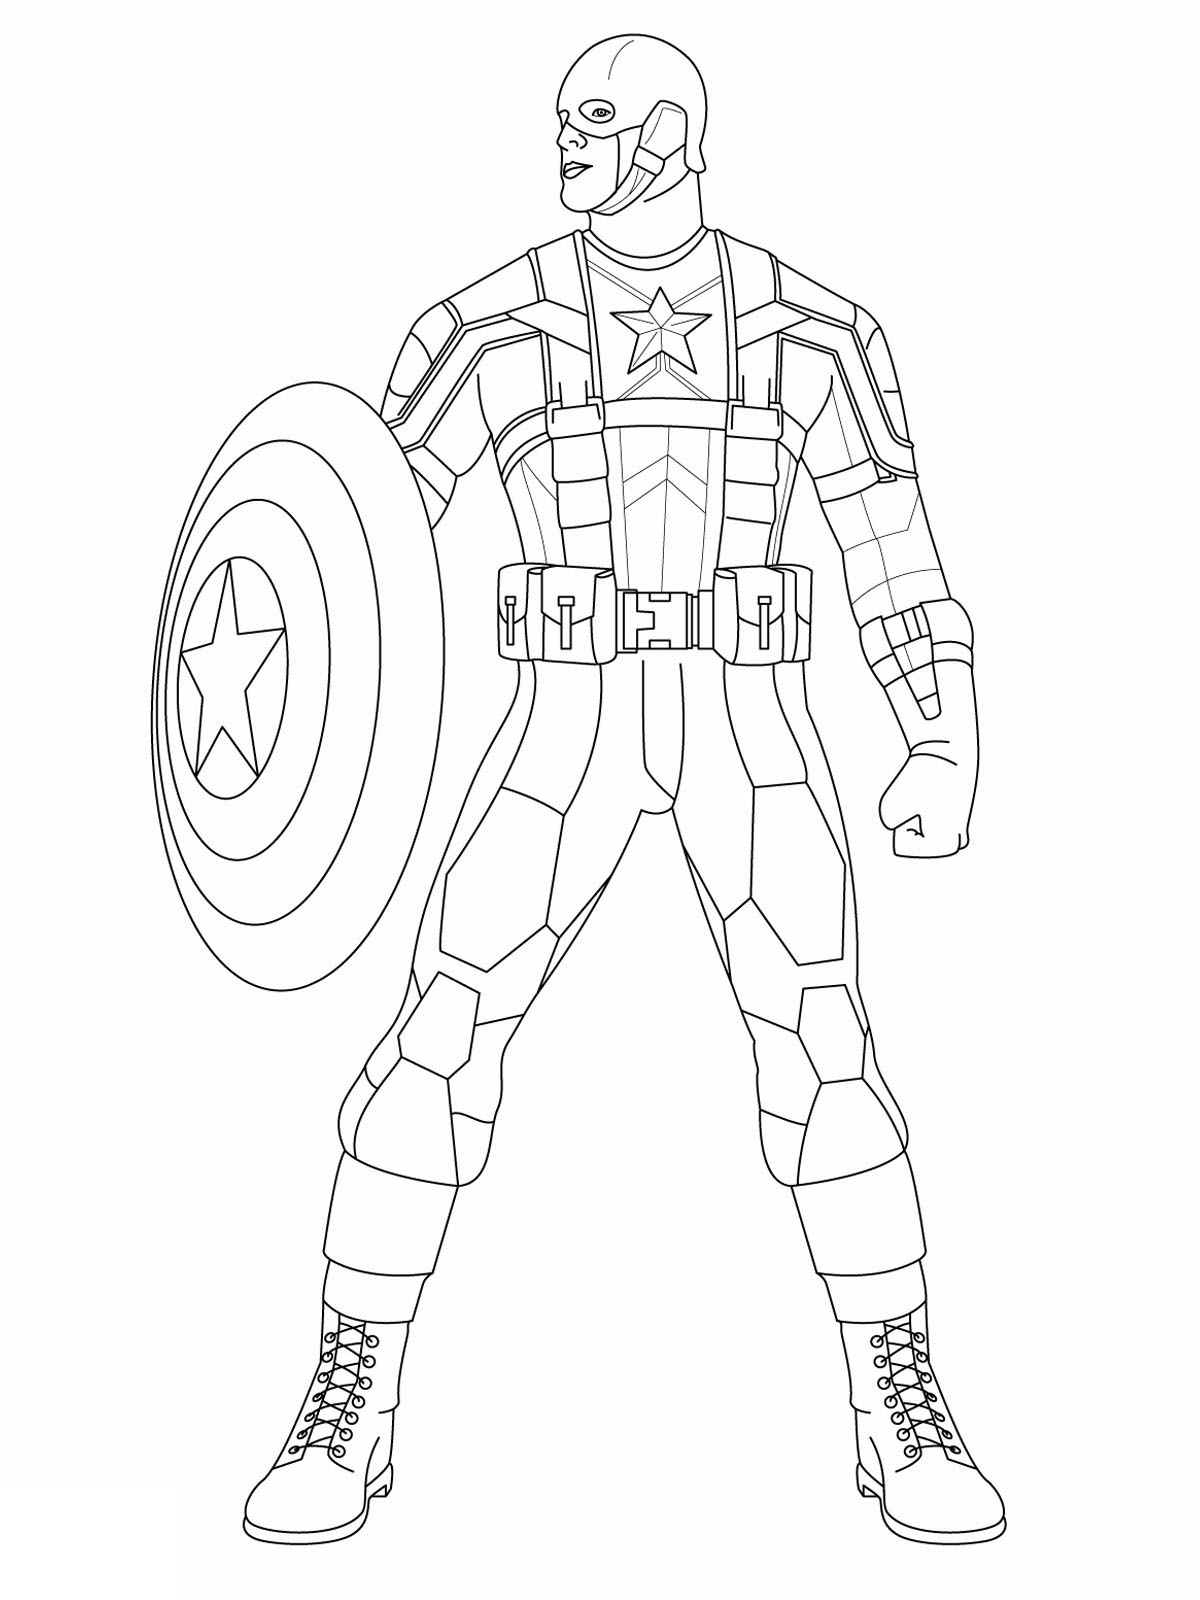 Captain America simples para colorir páginas para crianças